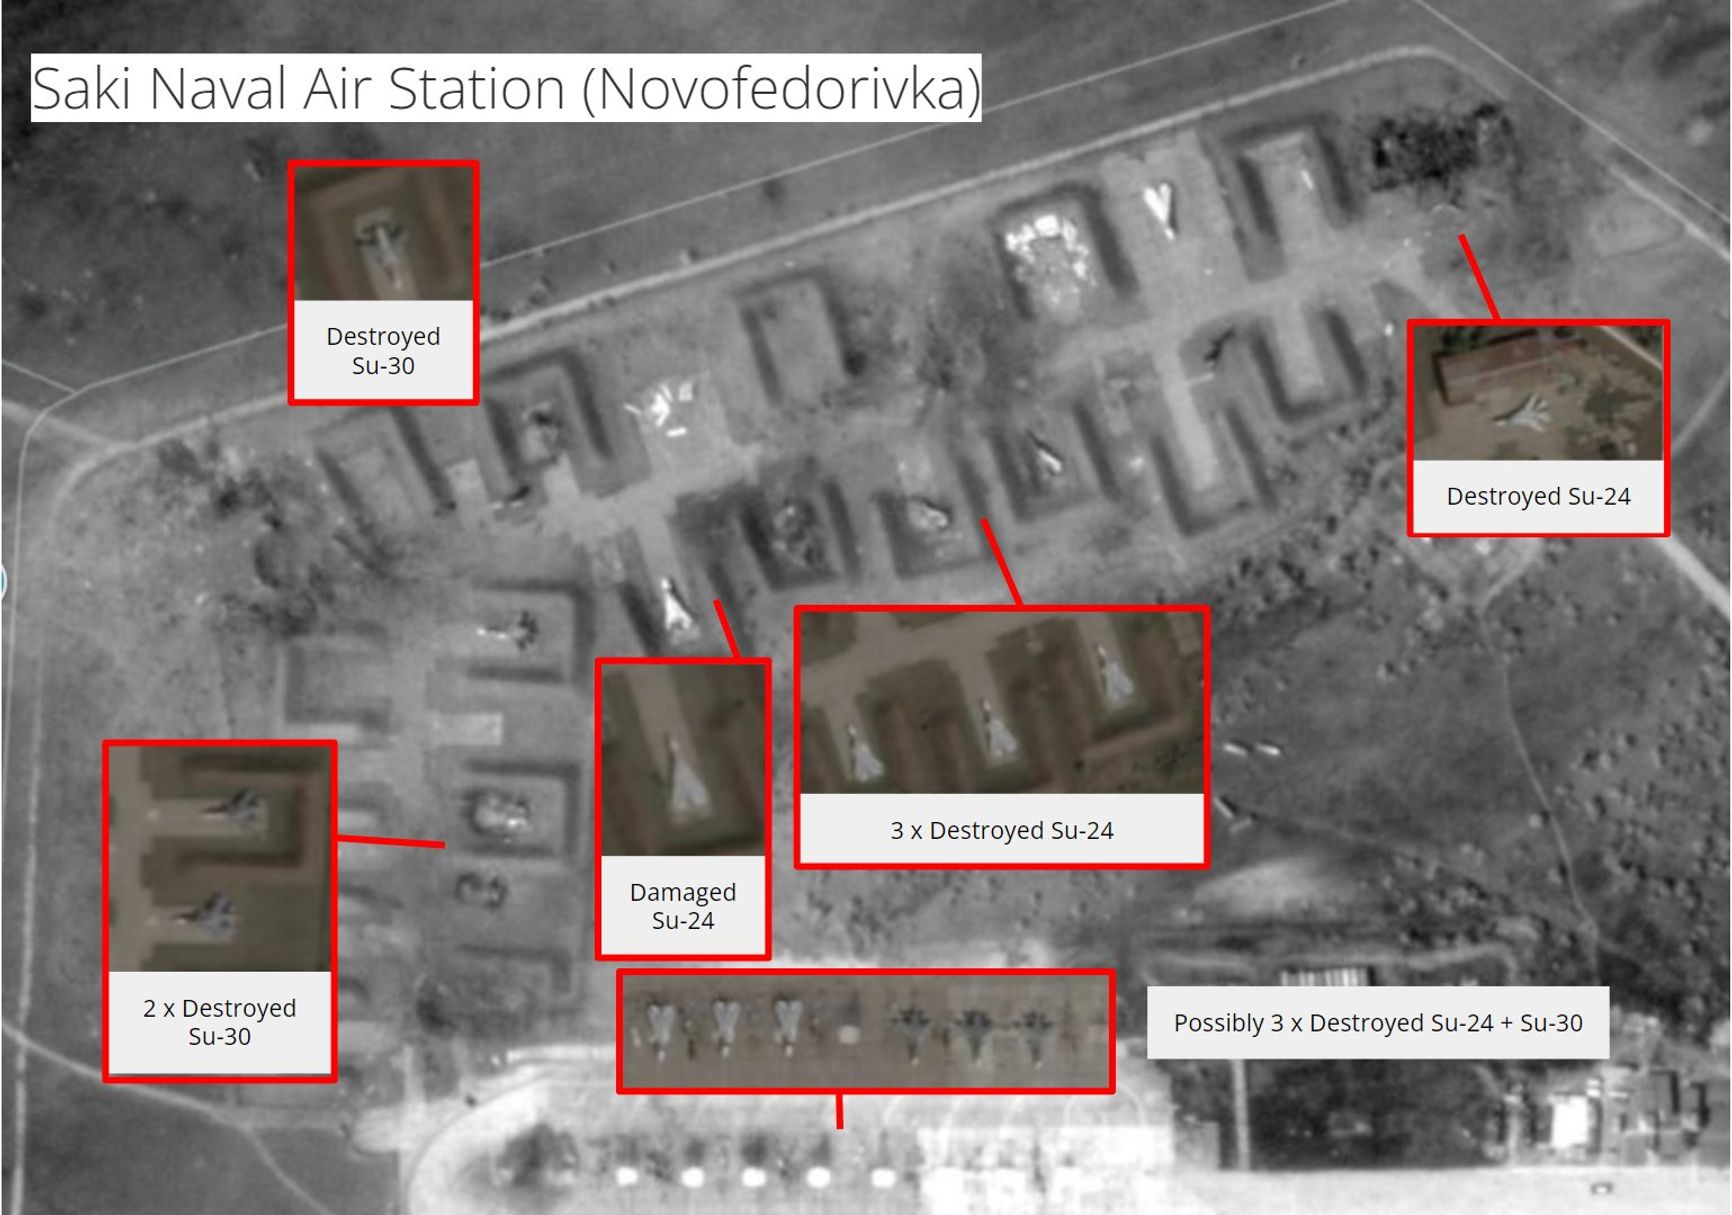 Опубликованы первые спутниковые снимки аэродрома в Крыму, на них не менее 10 сгоревших после взрывов самолетов